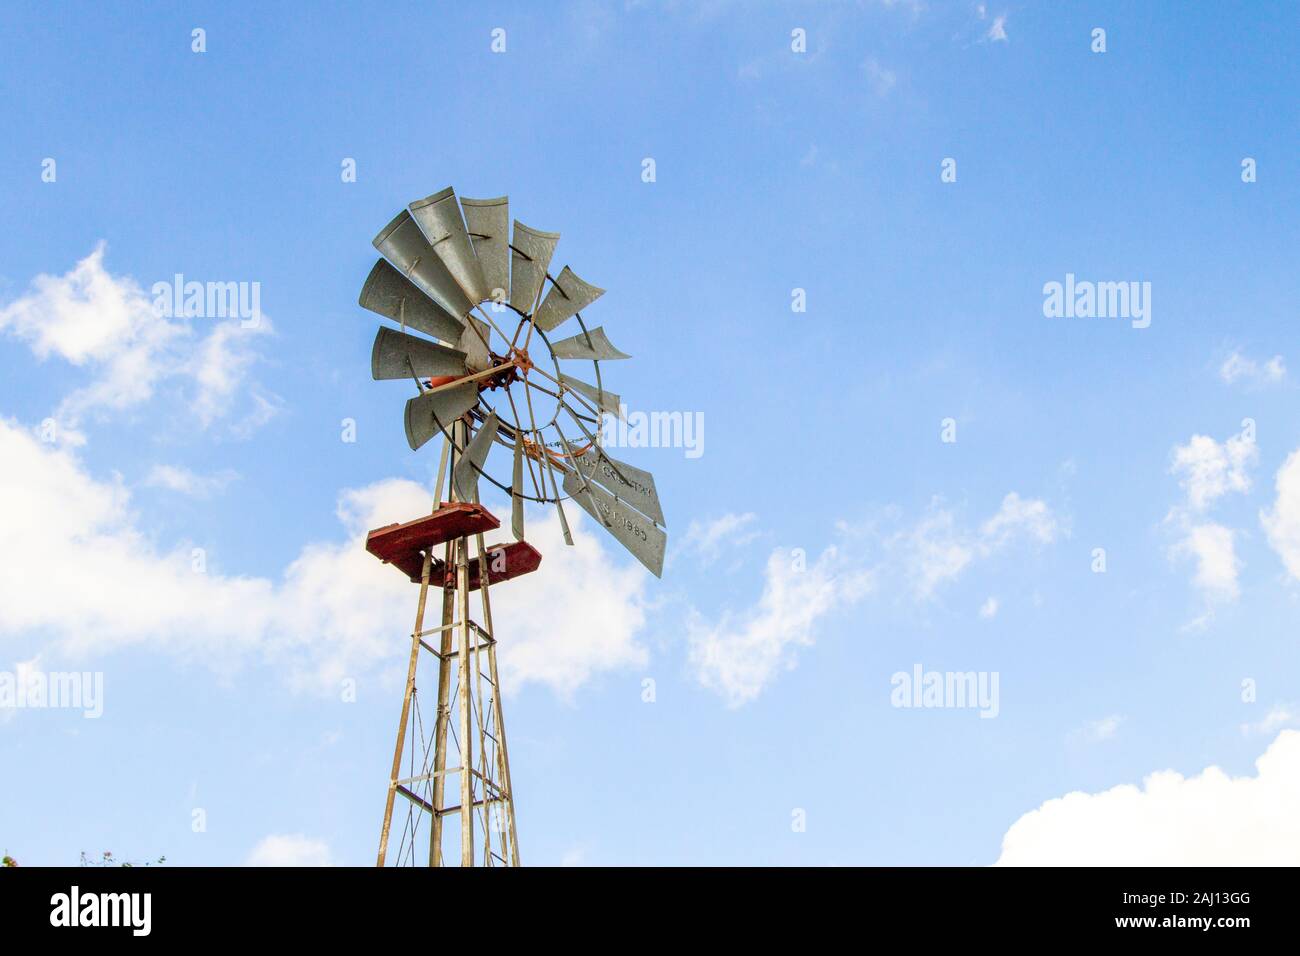 Altmodische Windmühle. Traditionelle altmodische Mühle gegen einen blauen Himmel mit Kopie Raum Stockfoto